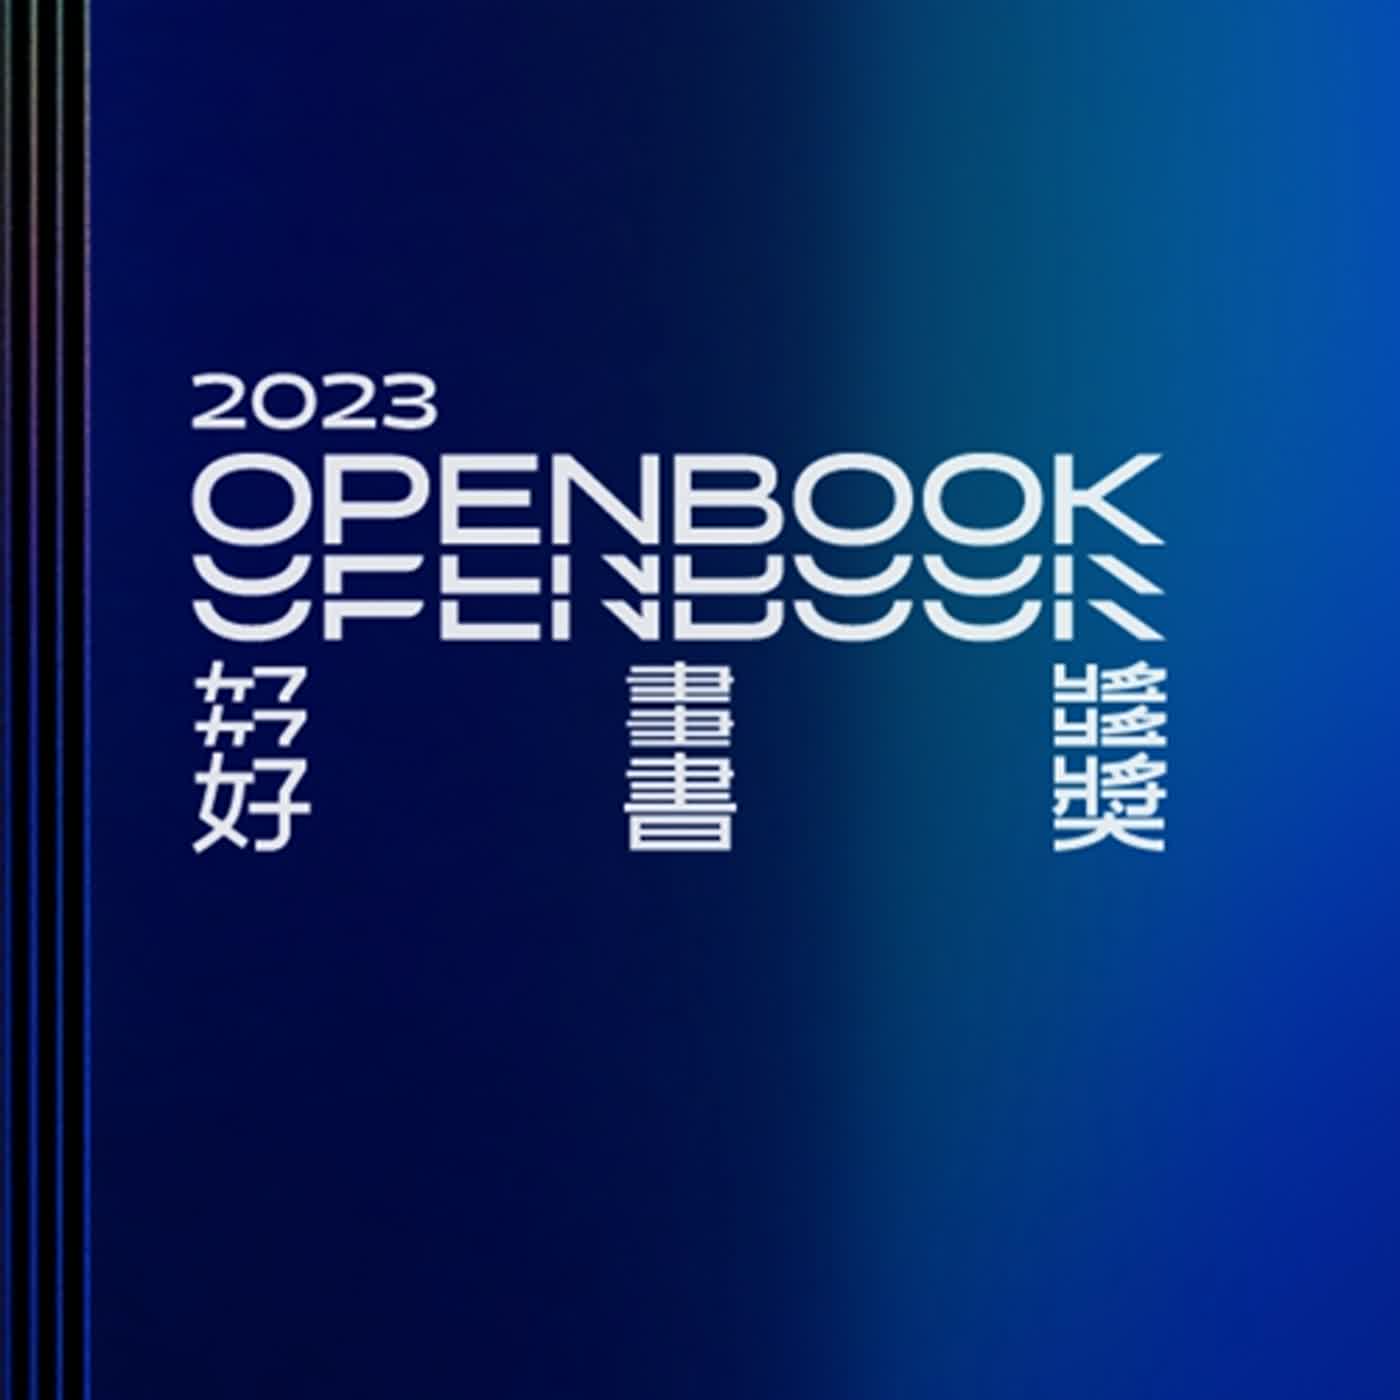 【編輯插播】七號參加 2023 Openbook 好書獎評選